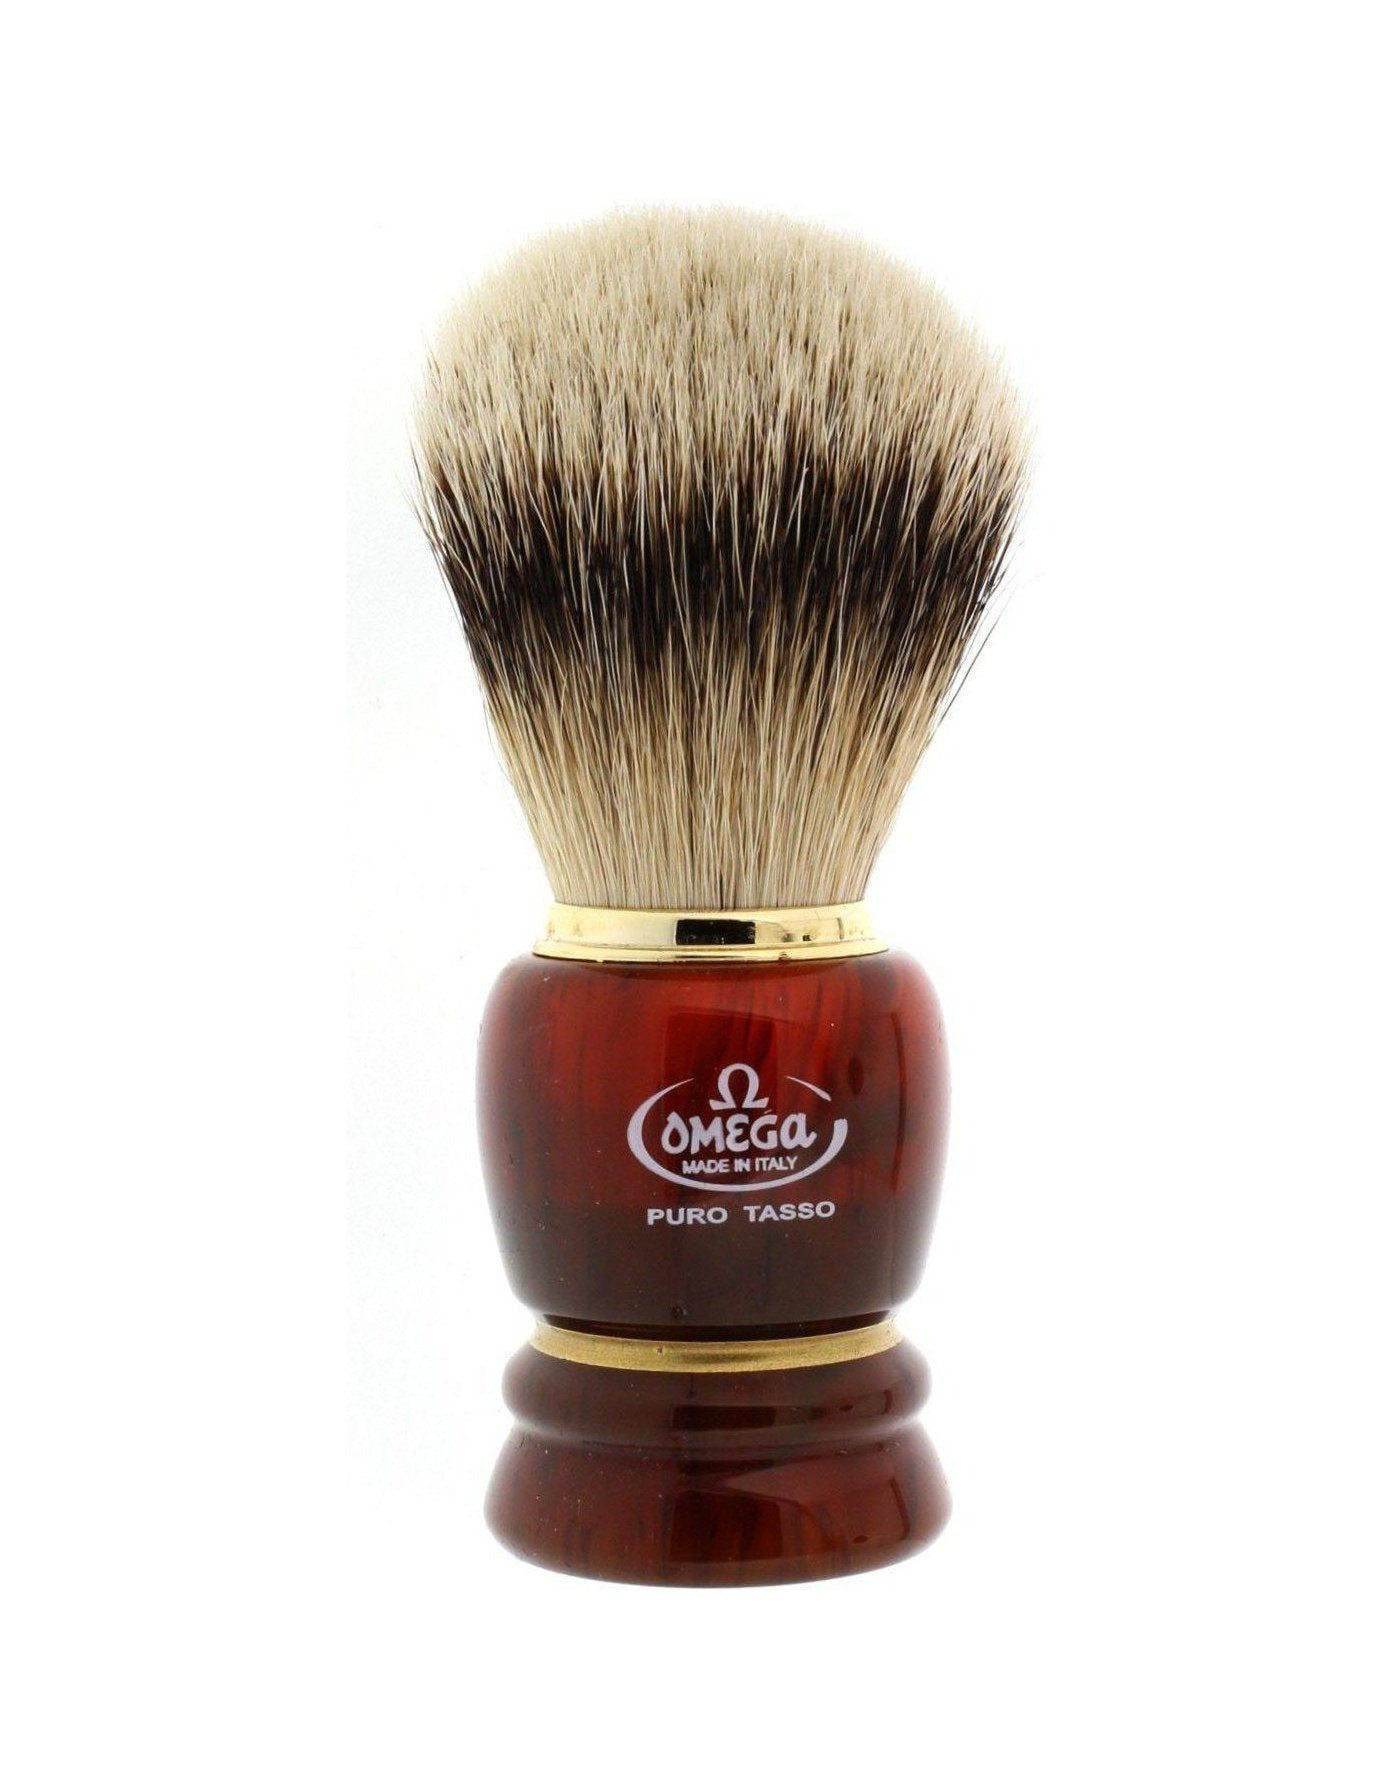 Omega 639 Silvertip Badger Shaving Brush